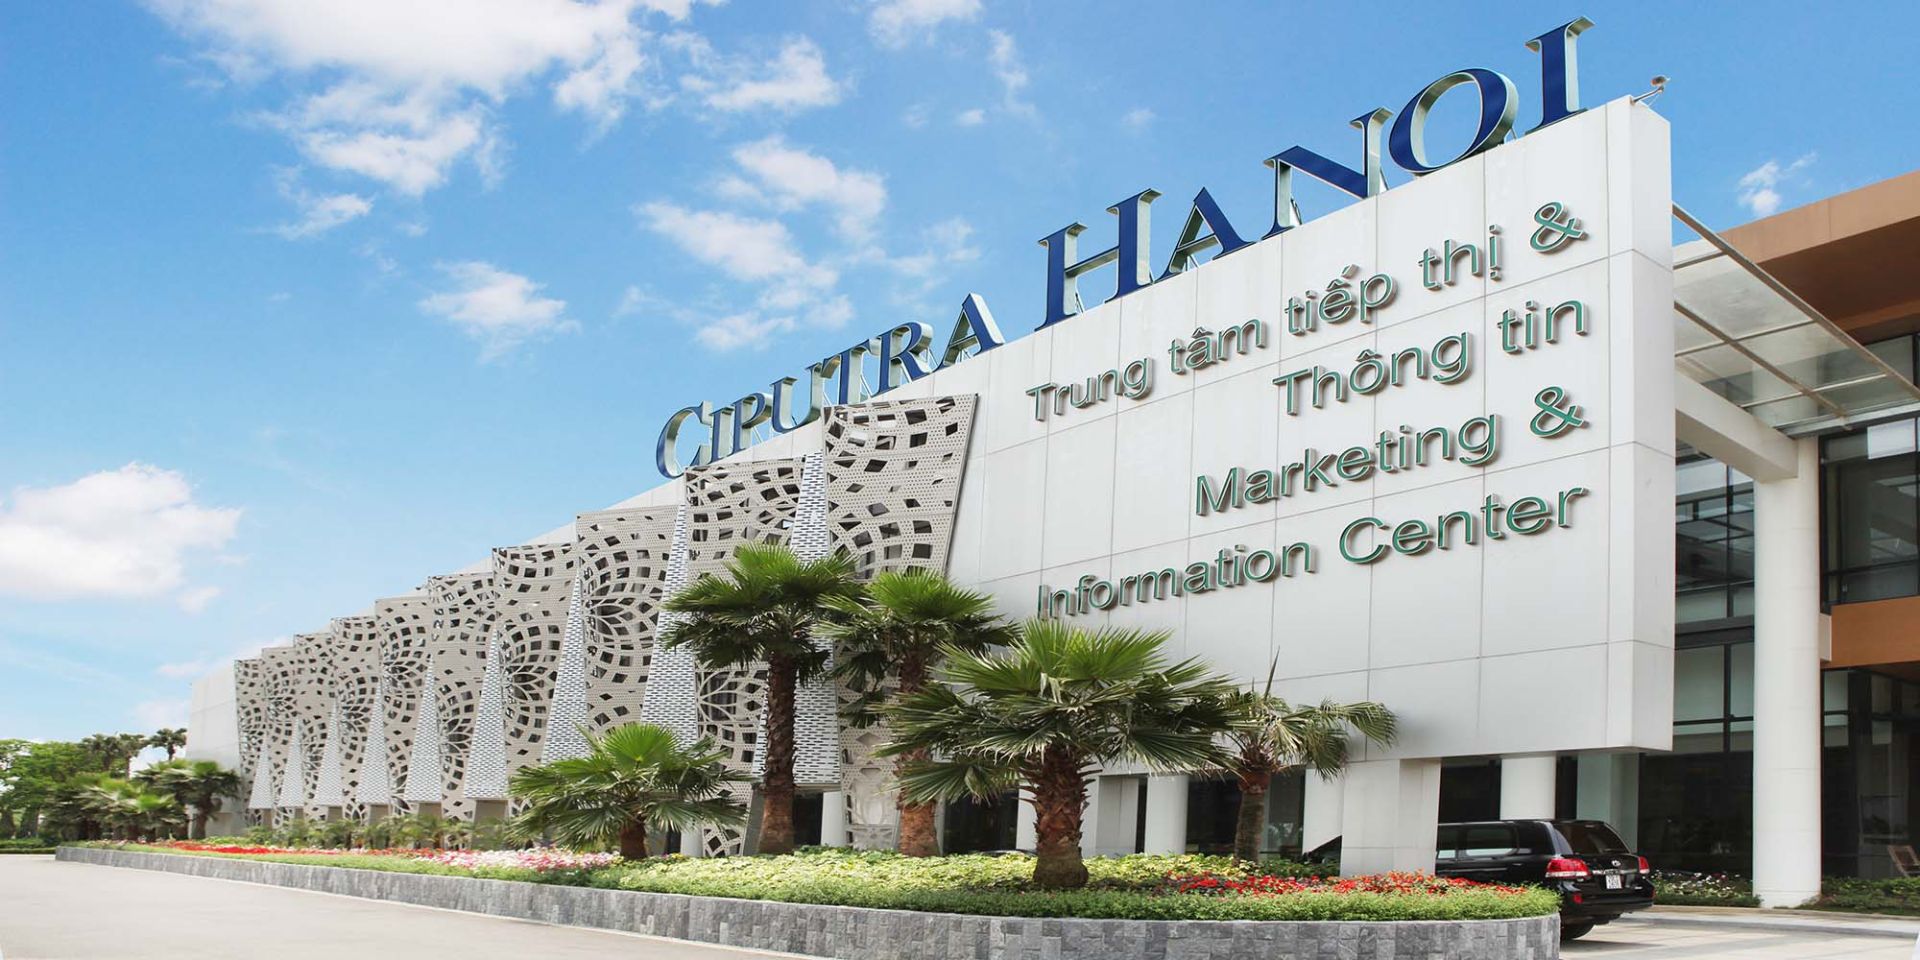 Ciputra, một tập đoàn đa ngành hàng đầu của Indonesia, hoạt động trong lĩnh vực bất động sản, y tế, giáo dục, và nghệ thuật